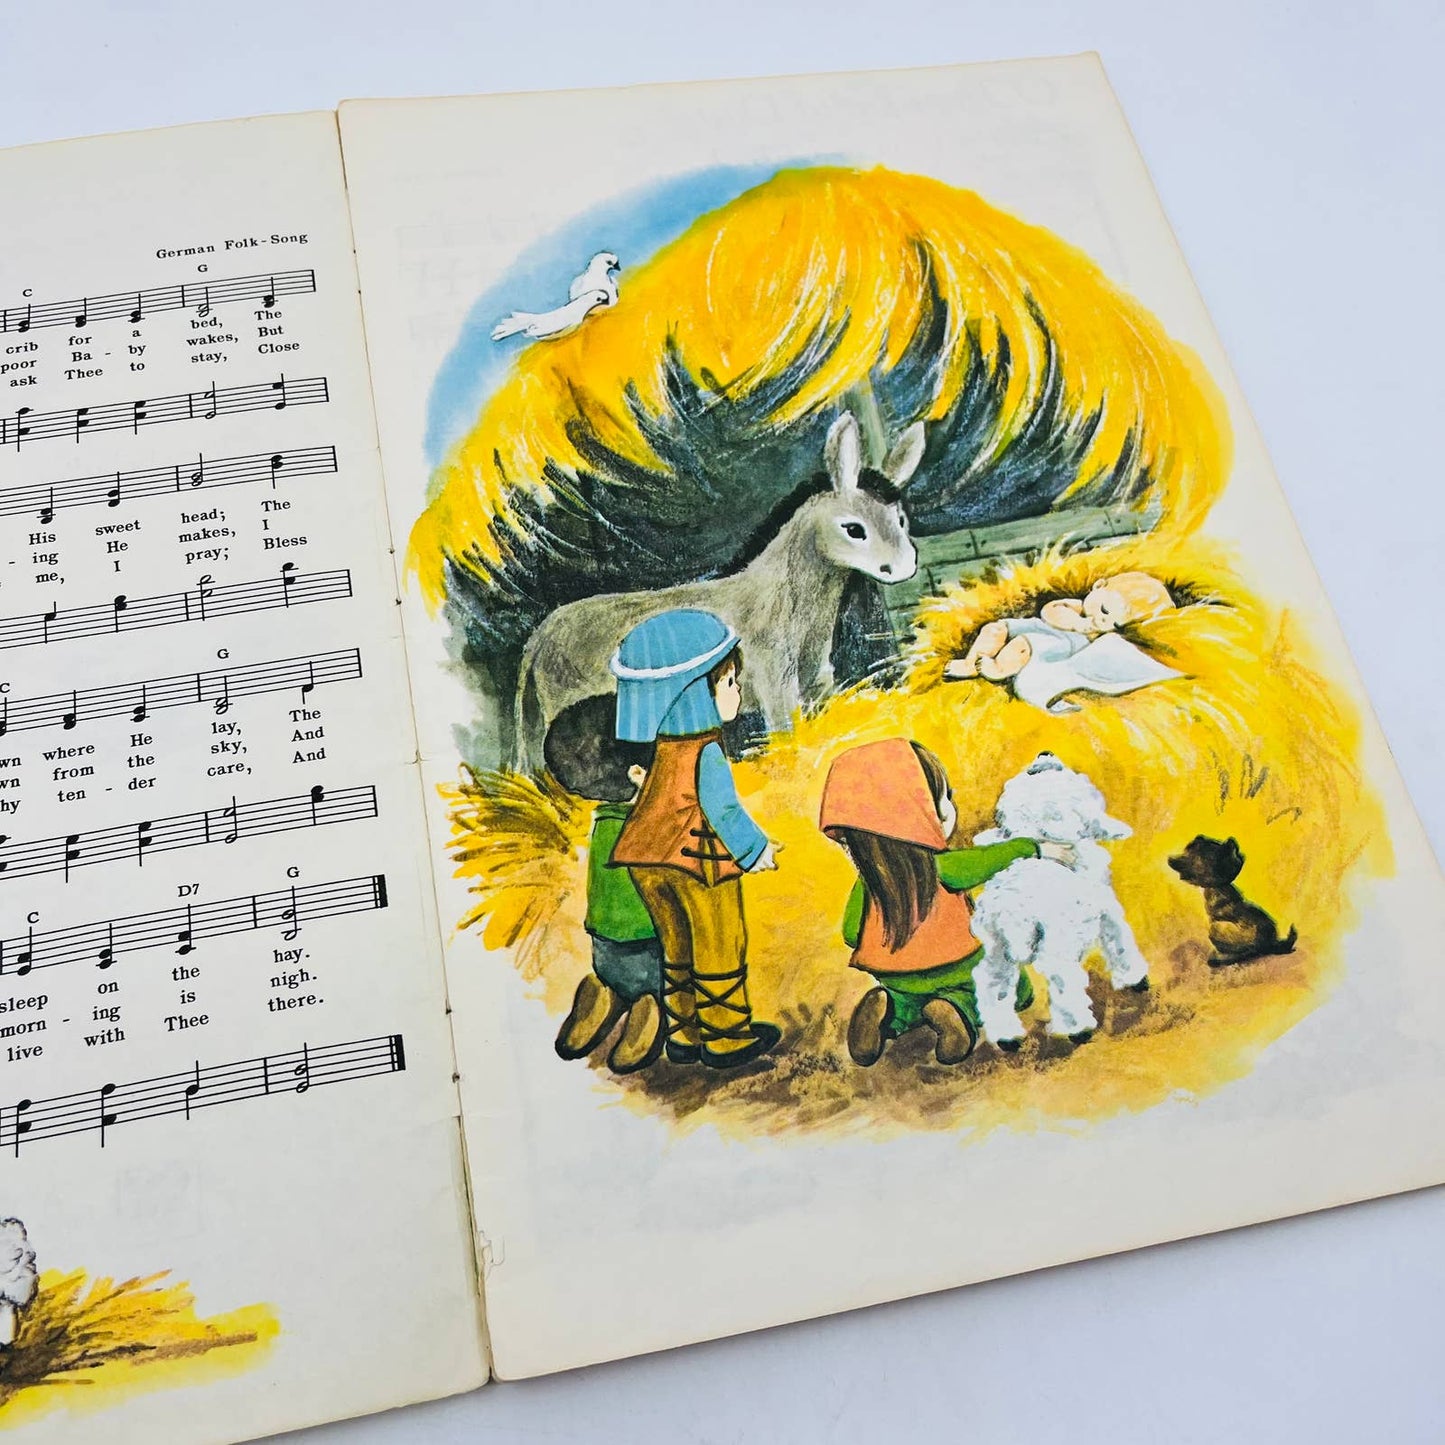 1950s-60s Christmas Carols Song Book Piano Organ Guitar Illustrated BA4